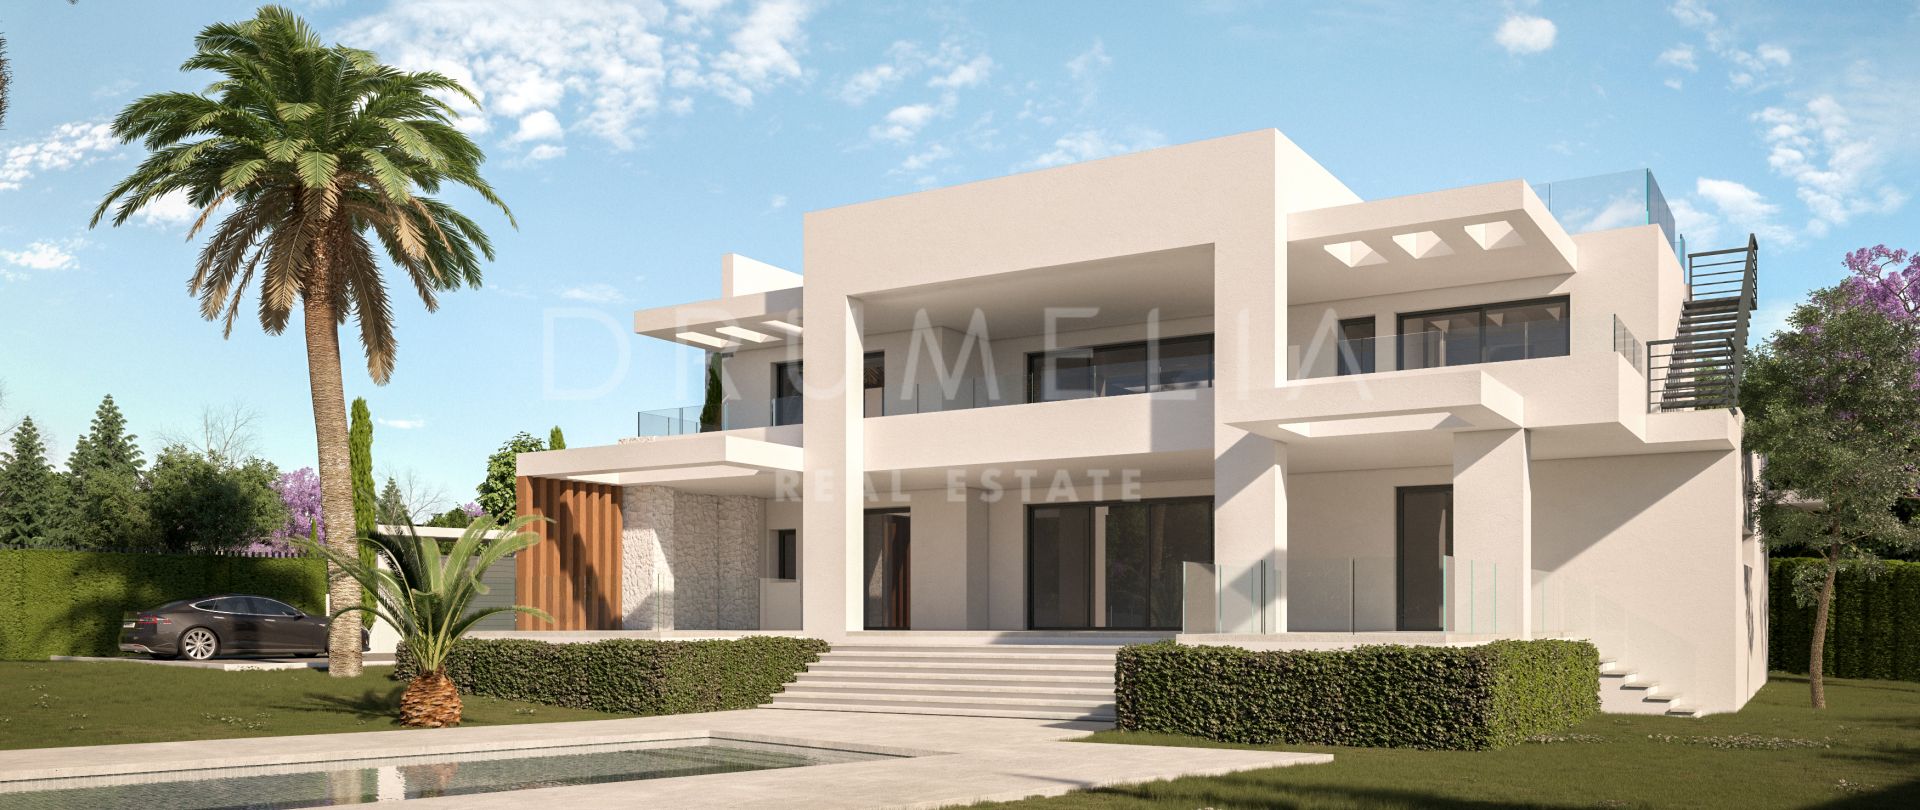 Villa for salg i Marbella Øst, Marbella (Alle)